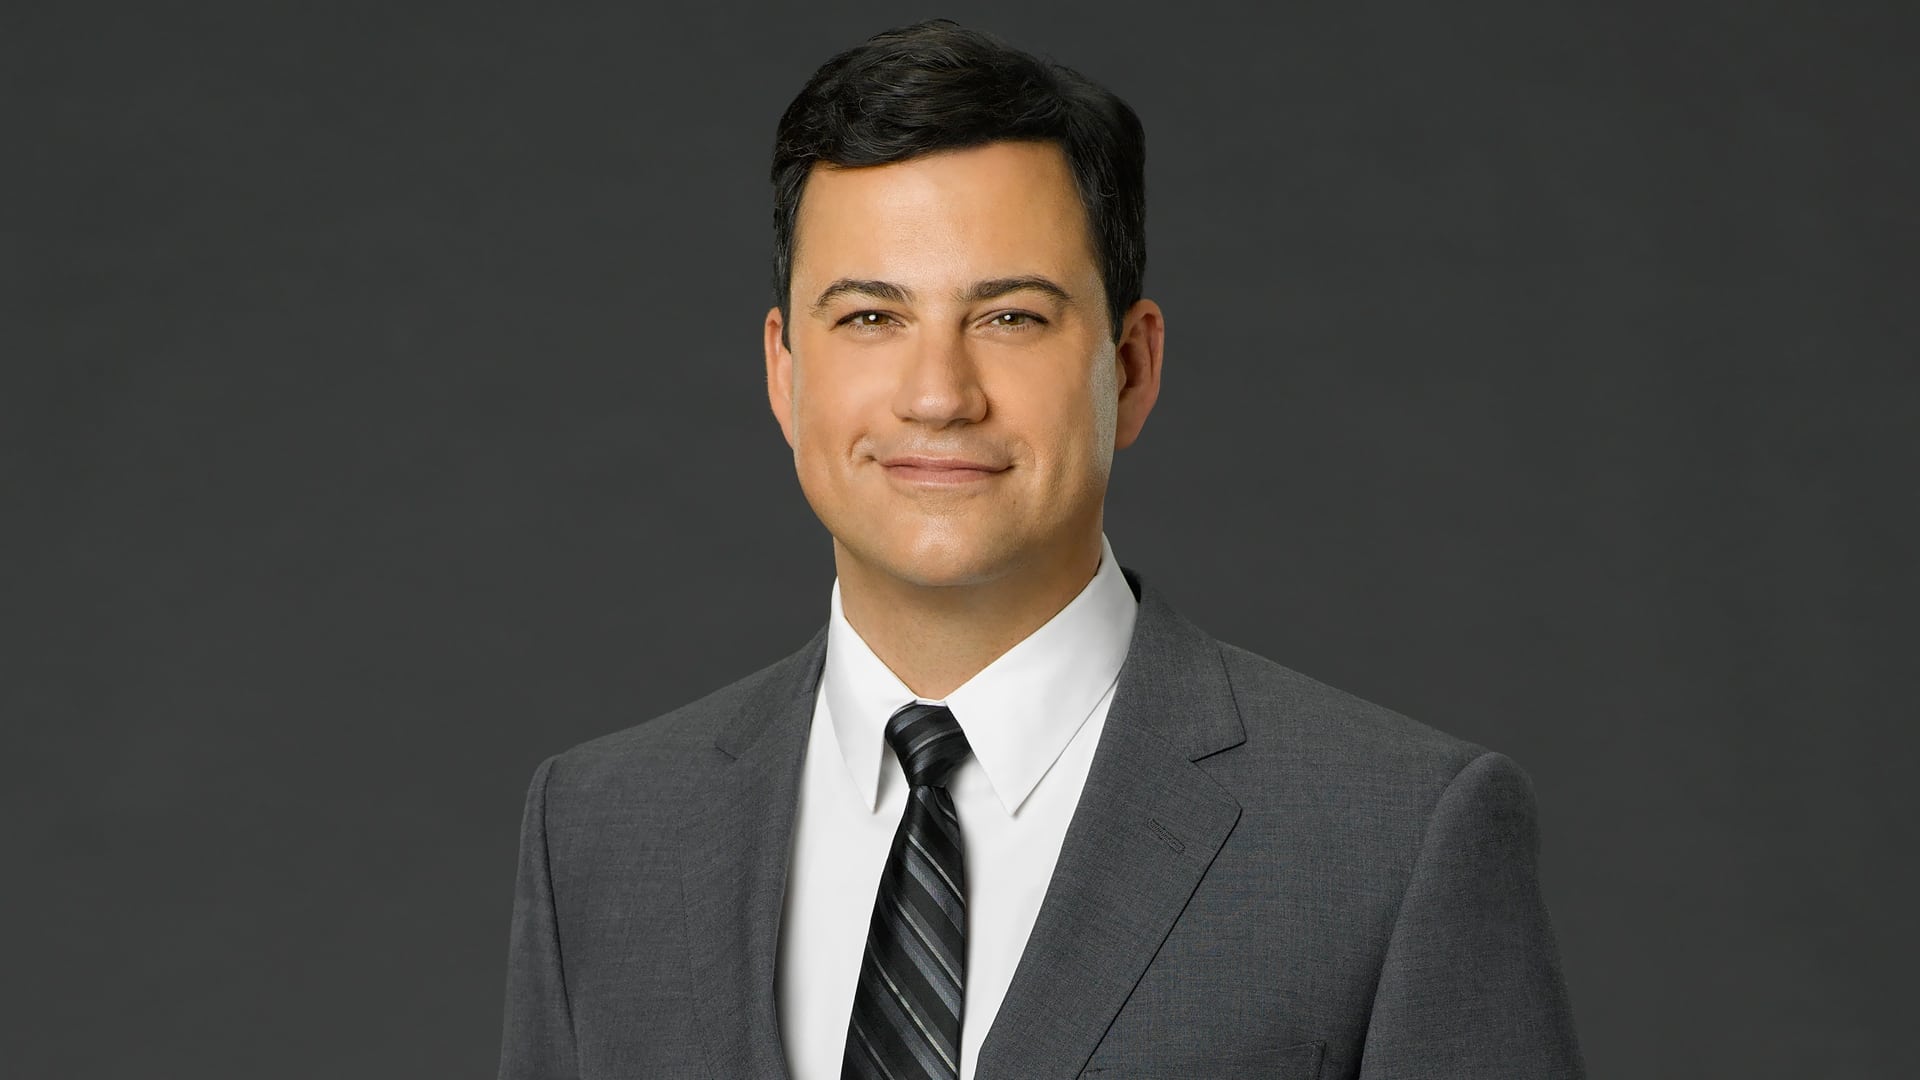 Jimmy Kimmel Live! - Season 22 Episode 61